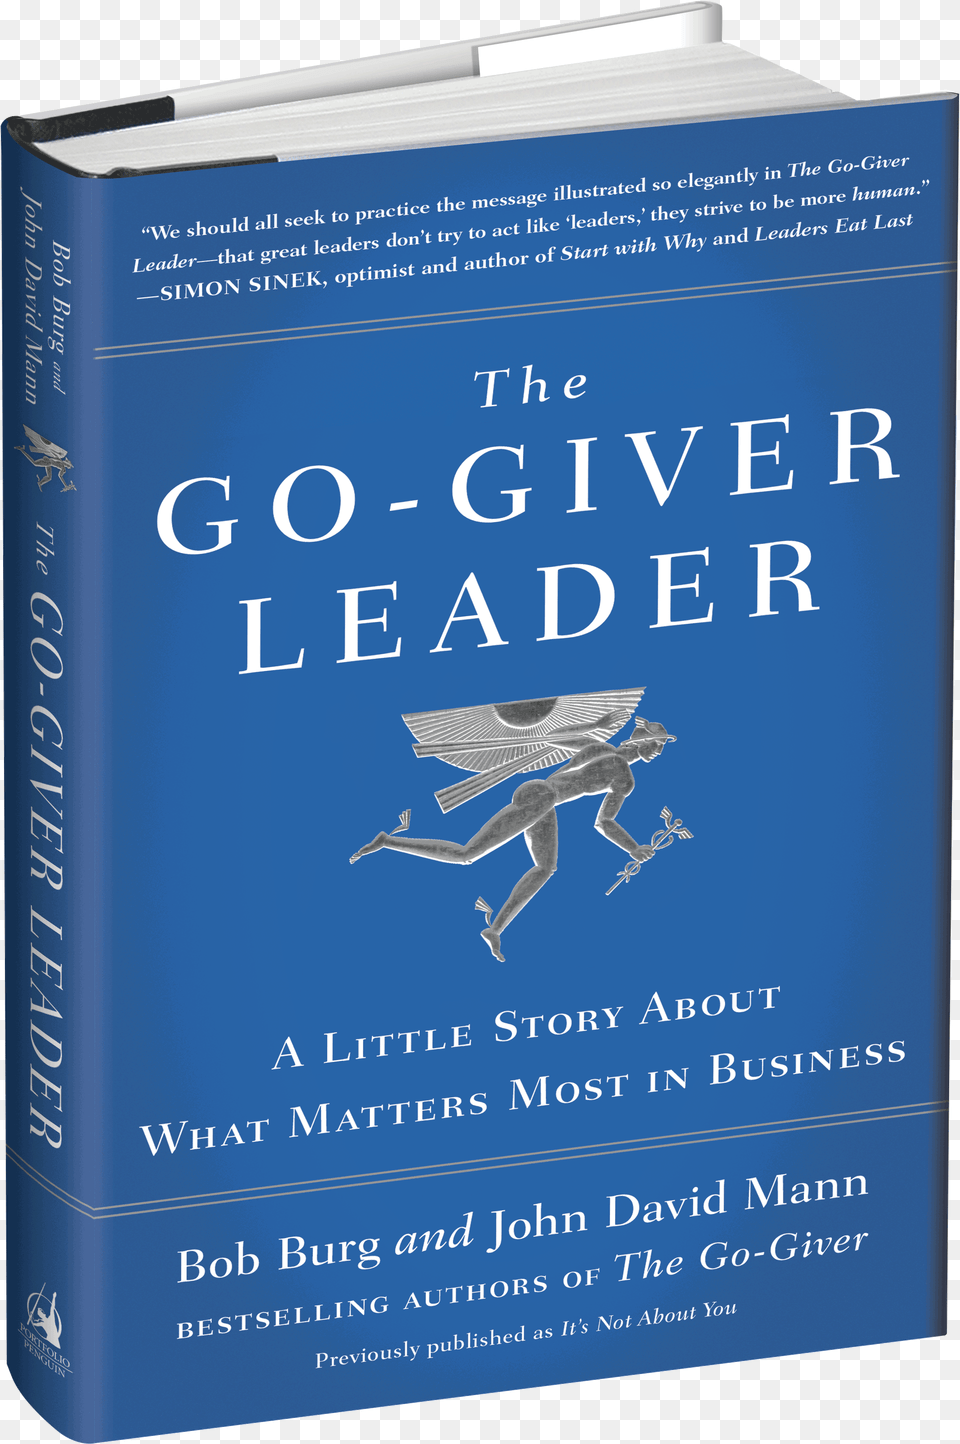 Go Giver Leader Book, Publication, Novel, Adult, Male Png Image